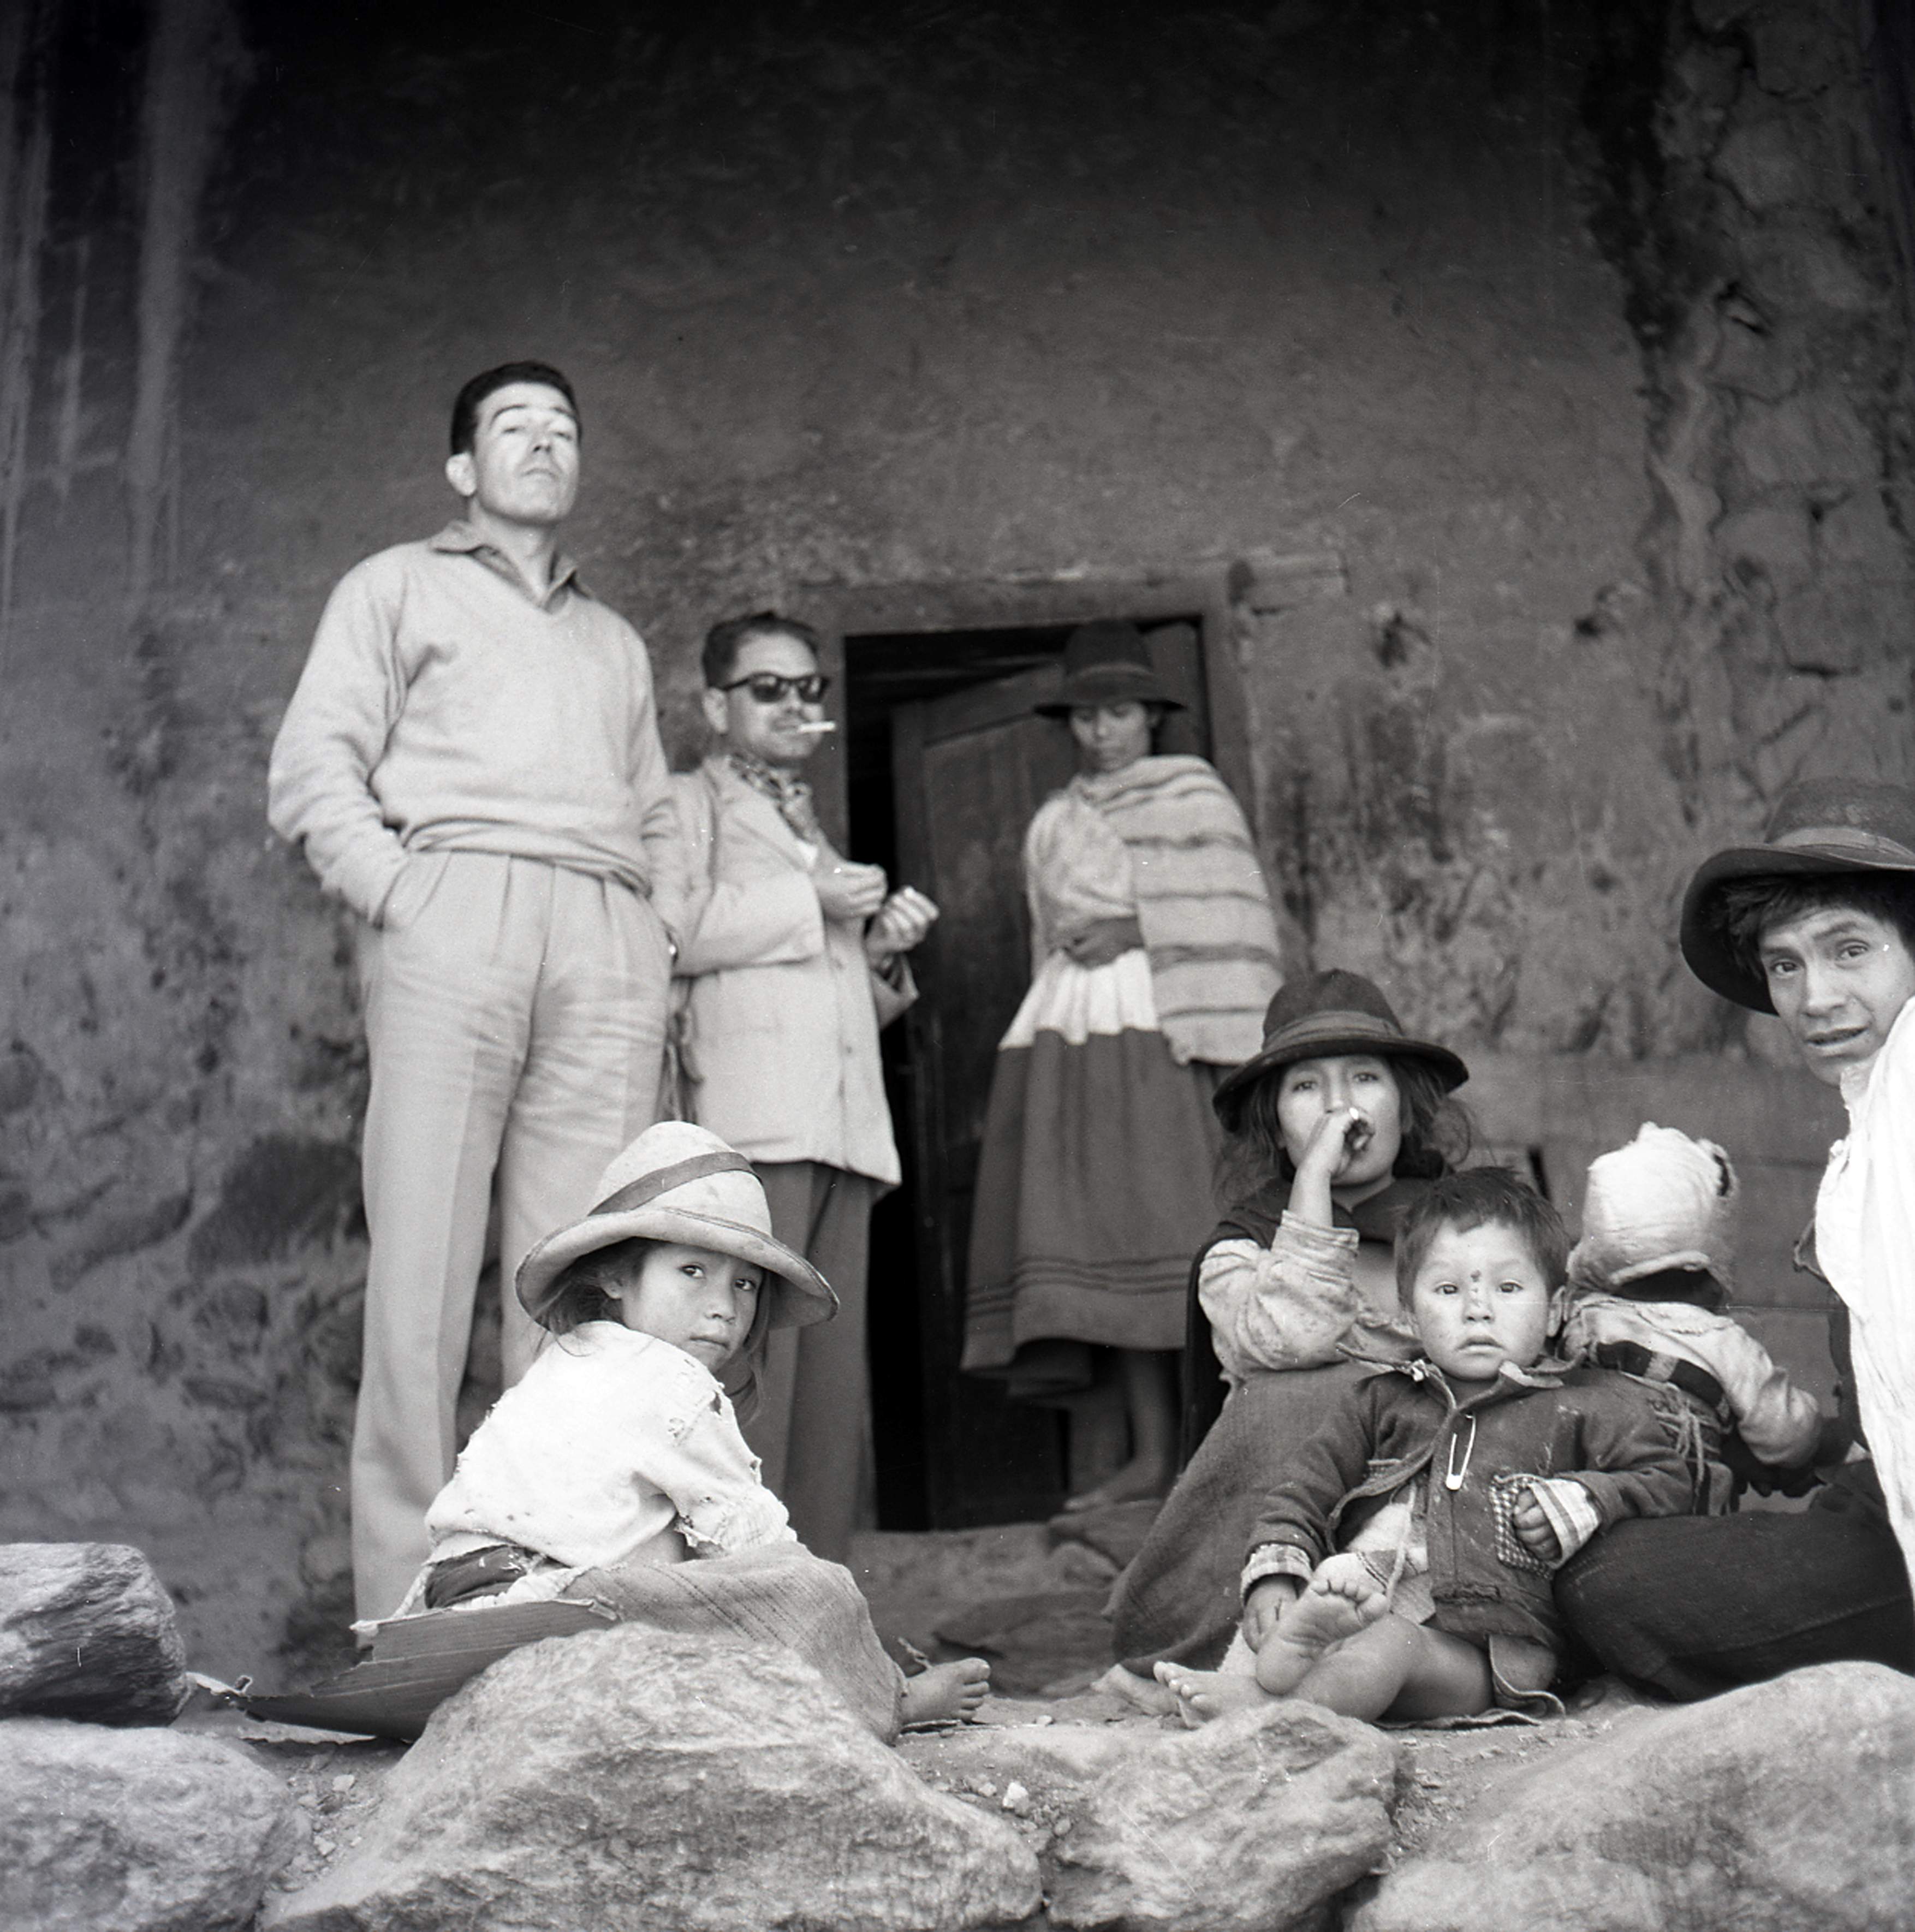  August Panyella i Albert Folch amb una família. Reportatge fotogràfic de l_expedició a Perú de l_any 1963.